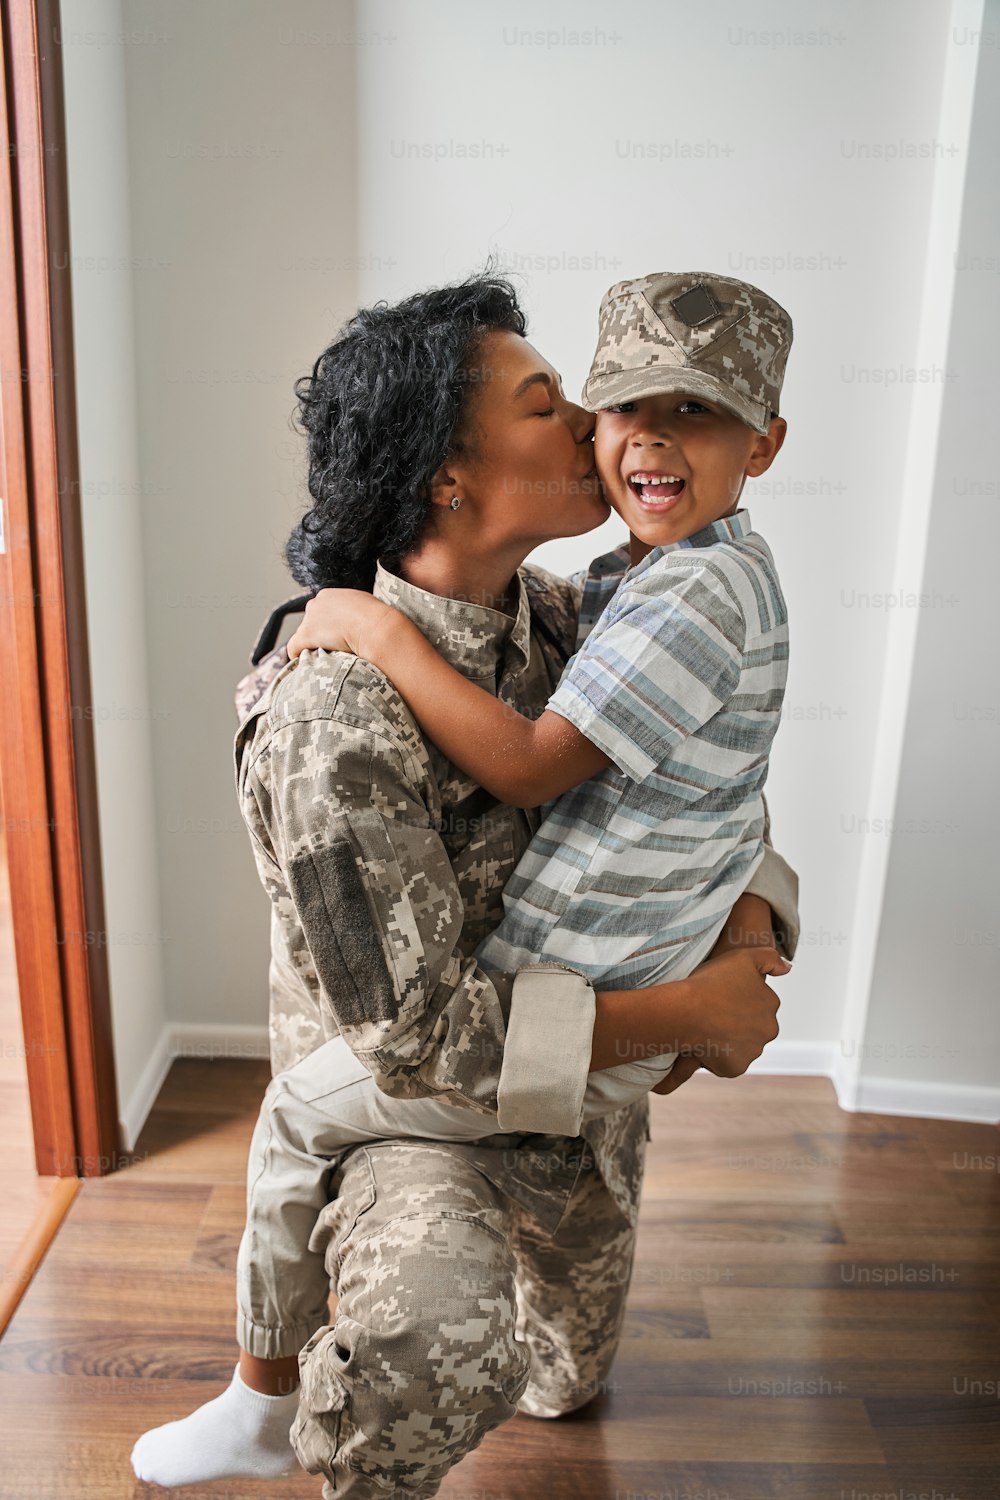 Glückliche Familie. Freudig erfreute Militärmutter und ihr Sohn, die sich ansahen und lächelten, während sie Spaß hatten. Frau küsst ihren Sohn nach Wiedersehen